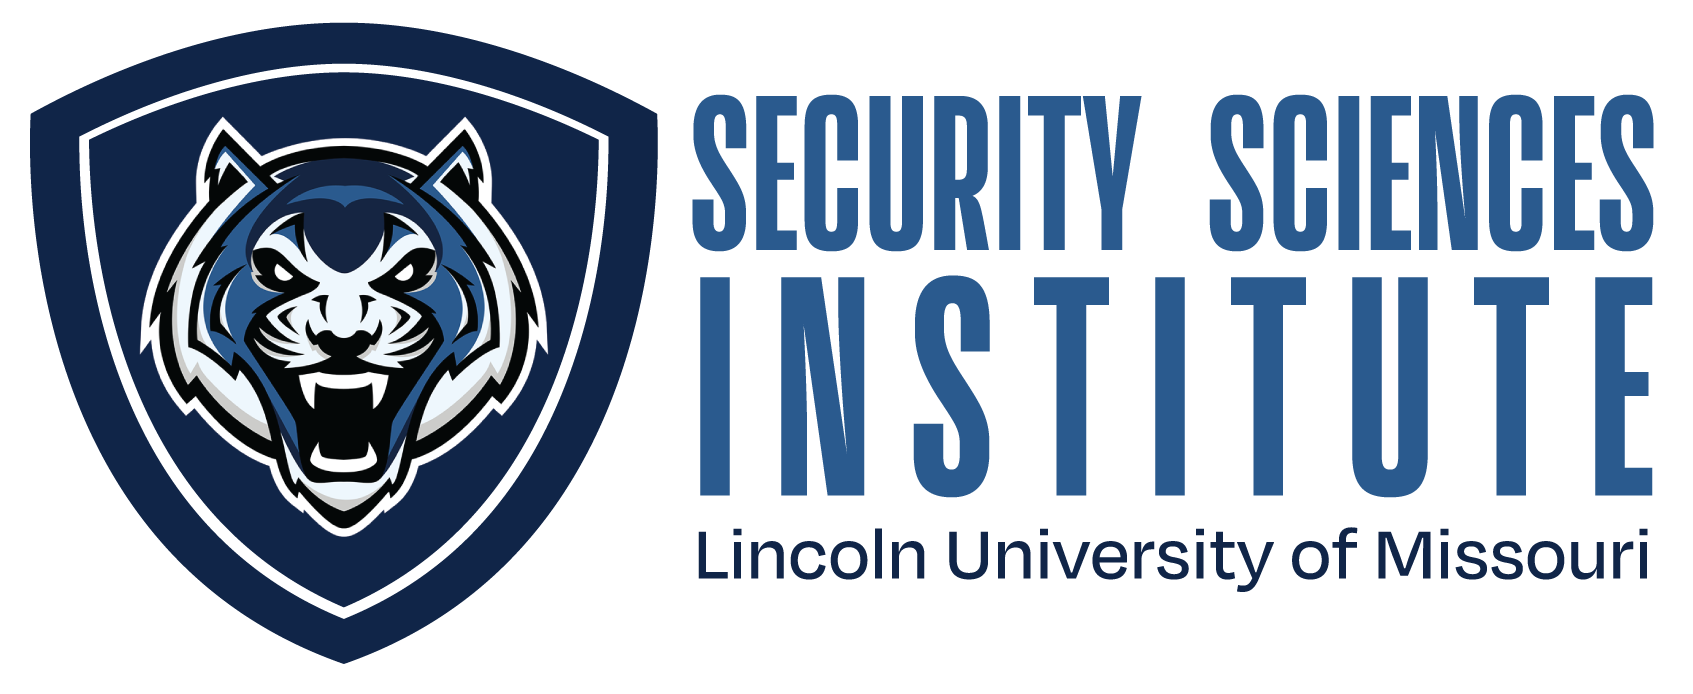 lu-security-sciences-institute-horz.png